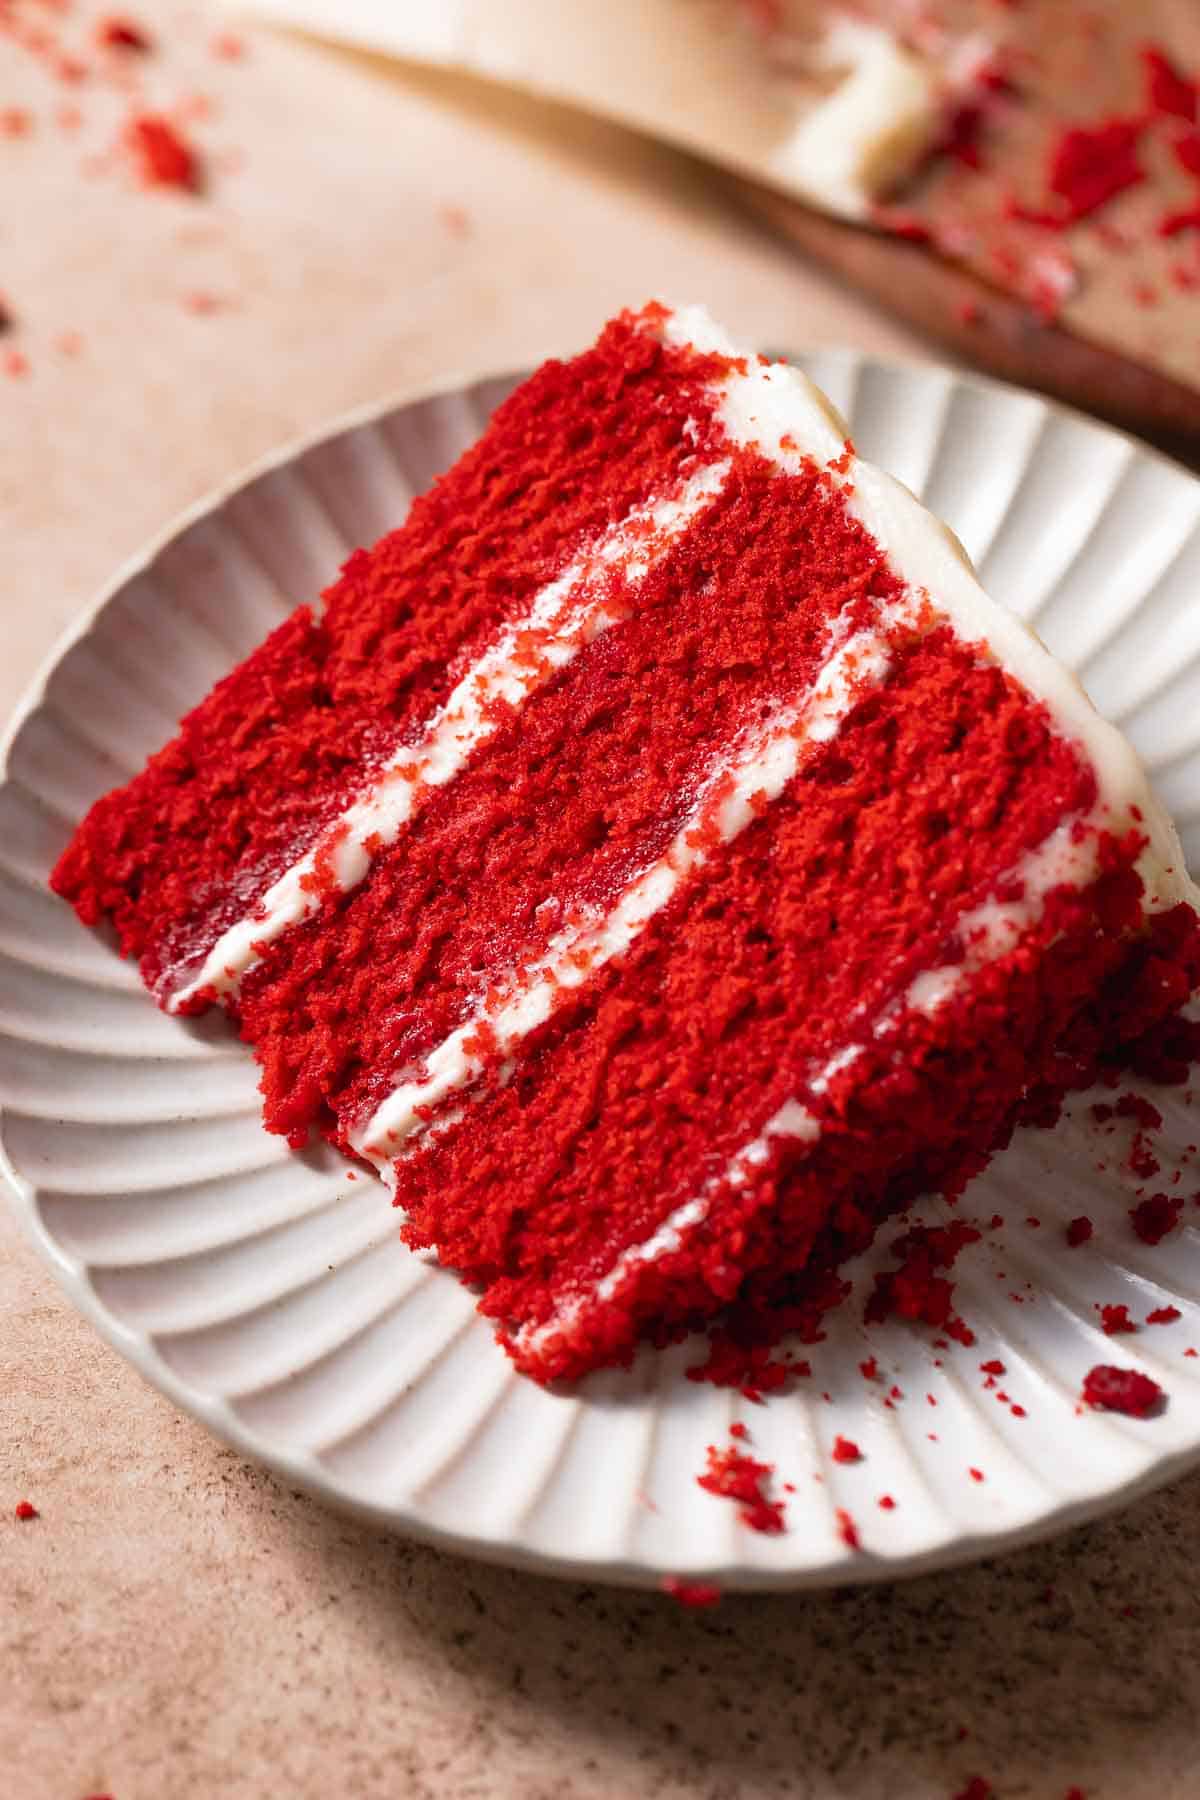 A slice of super moist red velvet cake on a white plate.